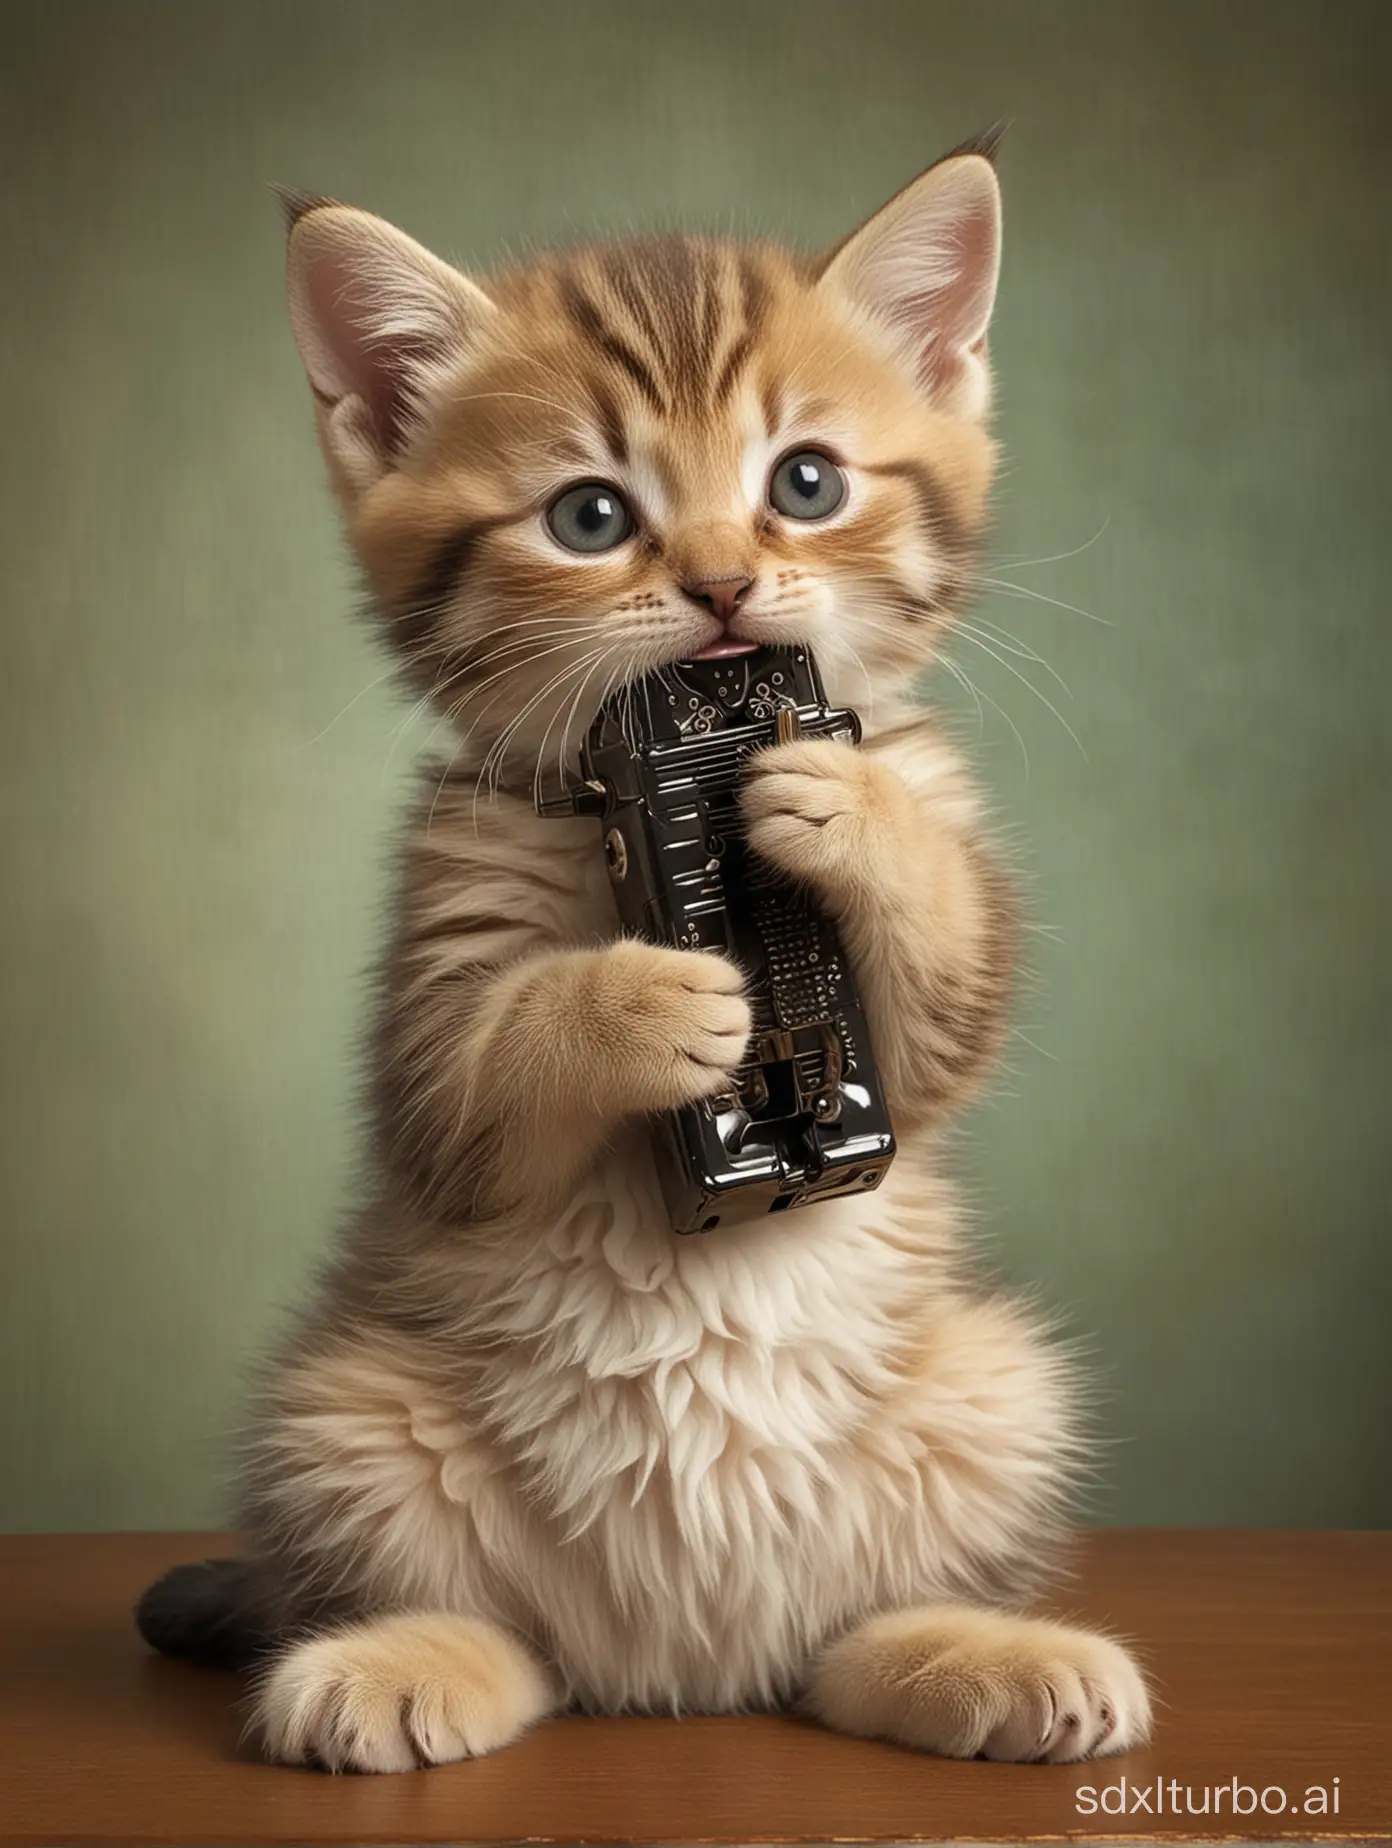 Anthropomorphic-Kitten-Playing-Harmonica